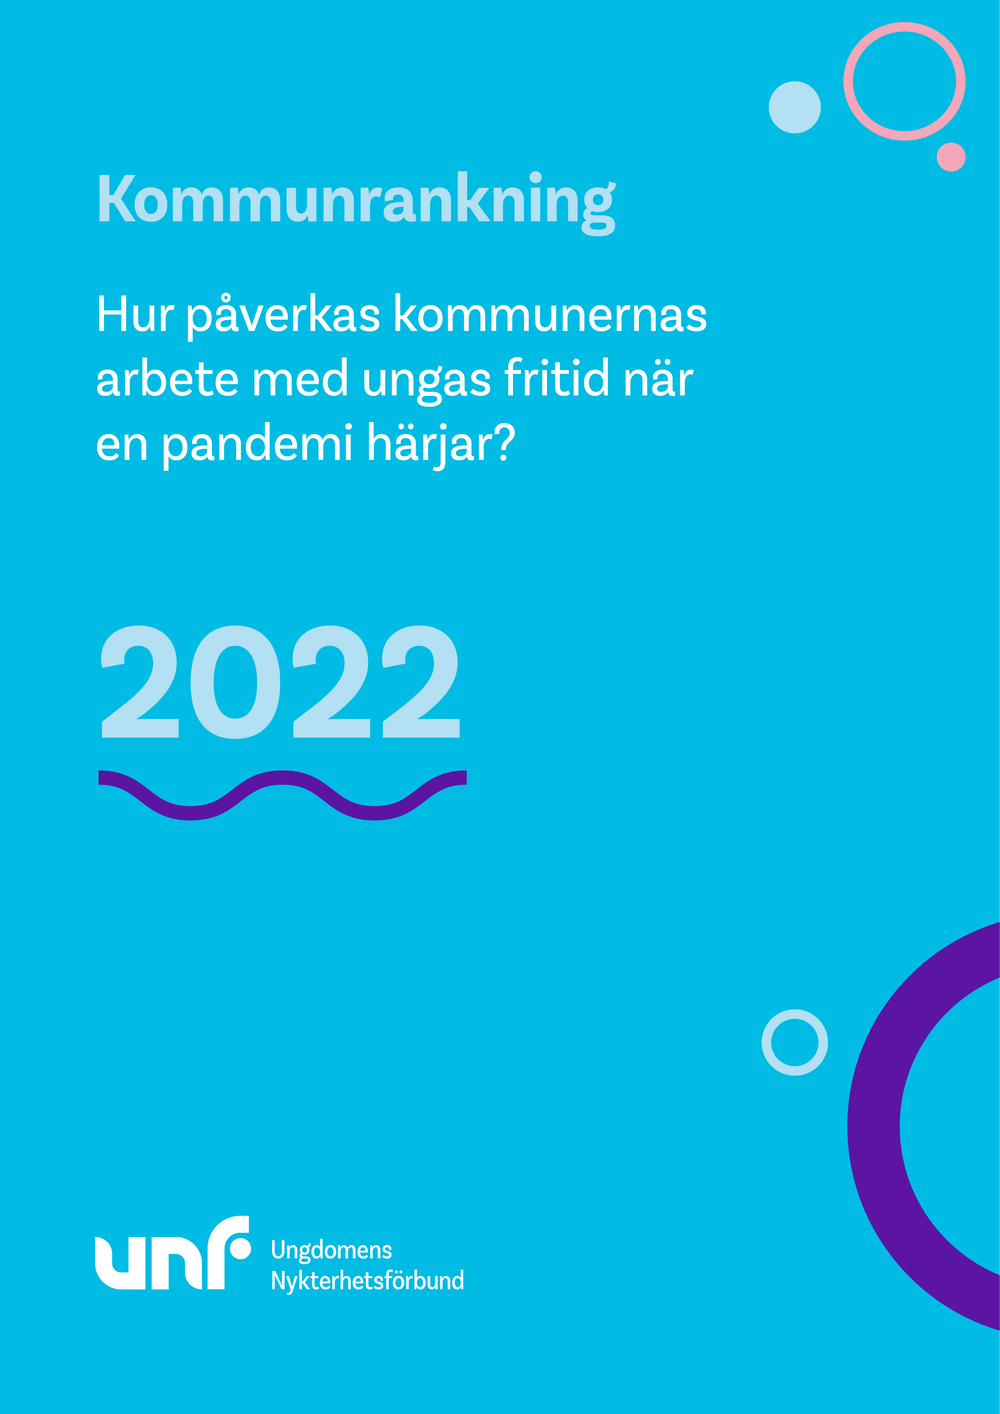 Bild på rapporten Kommunrankningens 2022's framsida